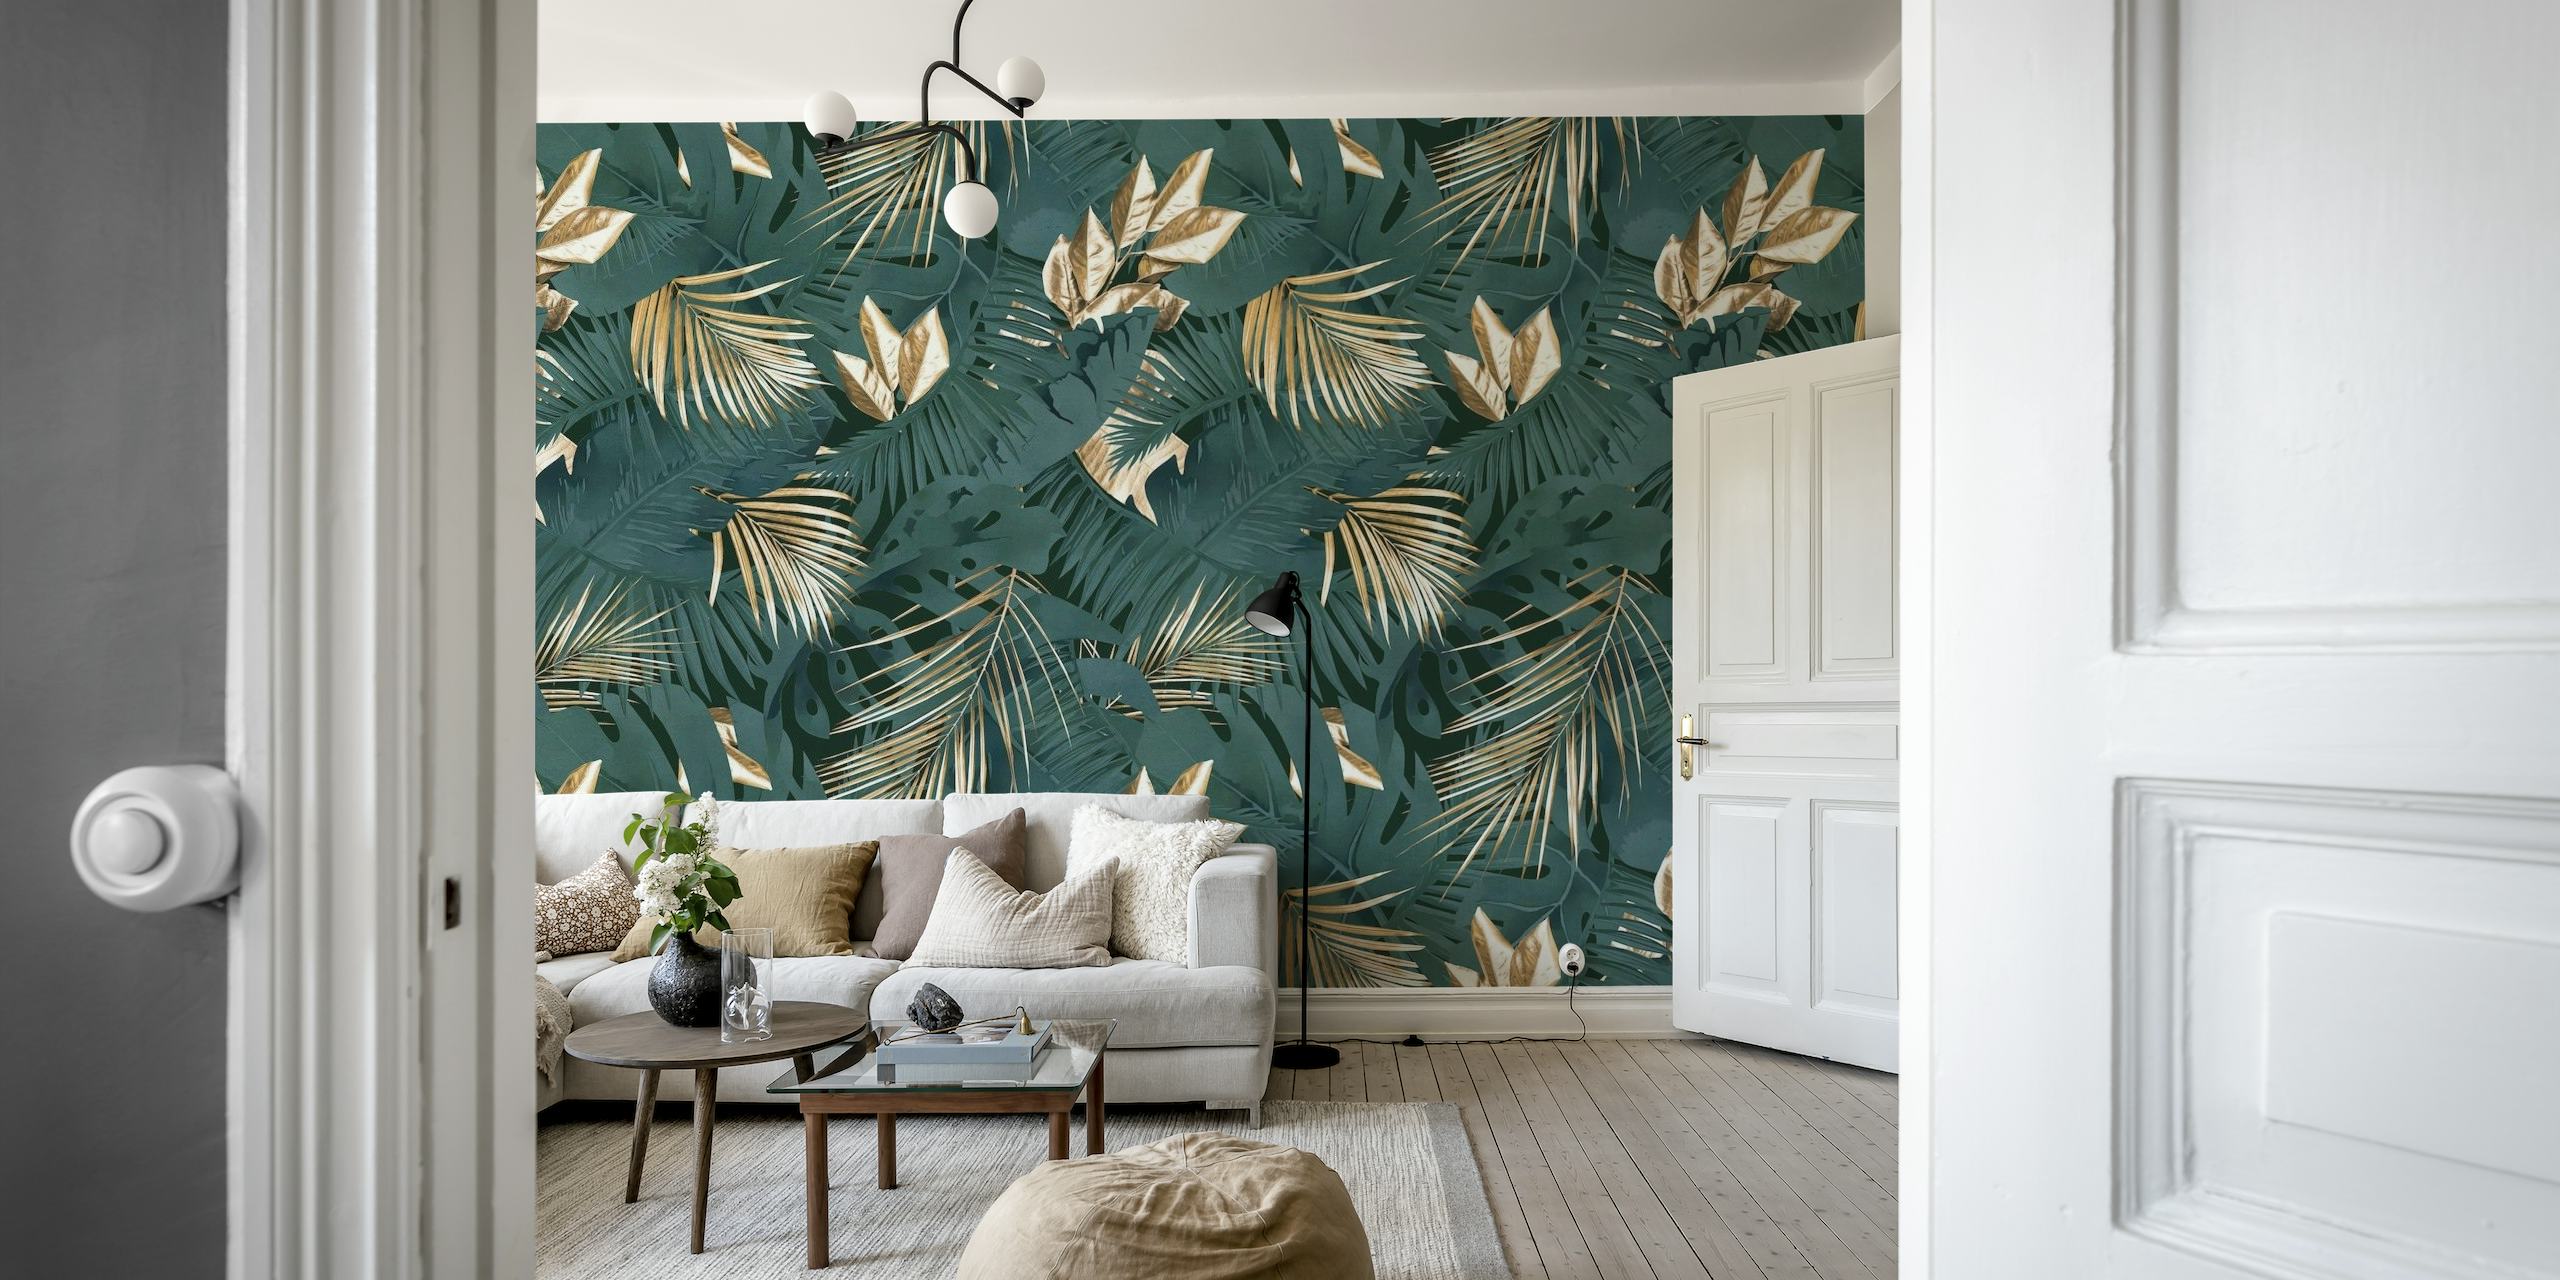 Papier peint aux tons sombres représentant des feuilles de palmier de la jungle dans un style glamour riche